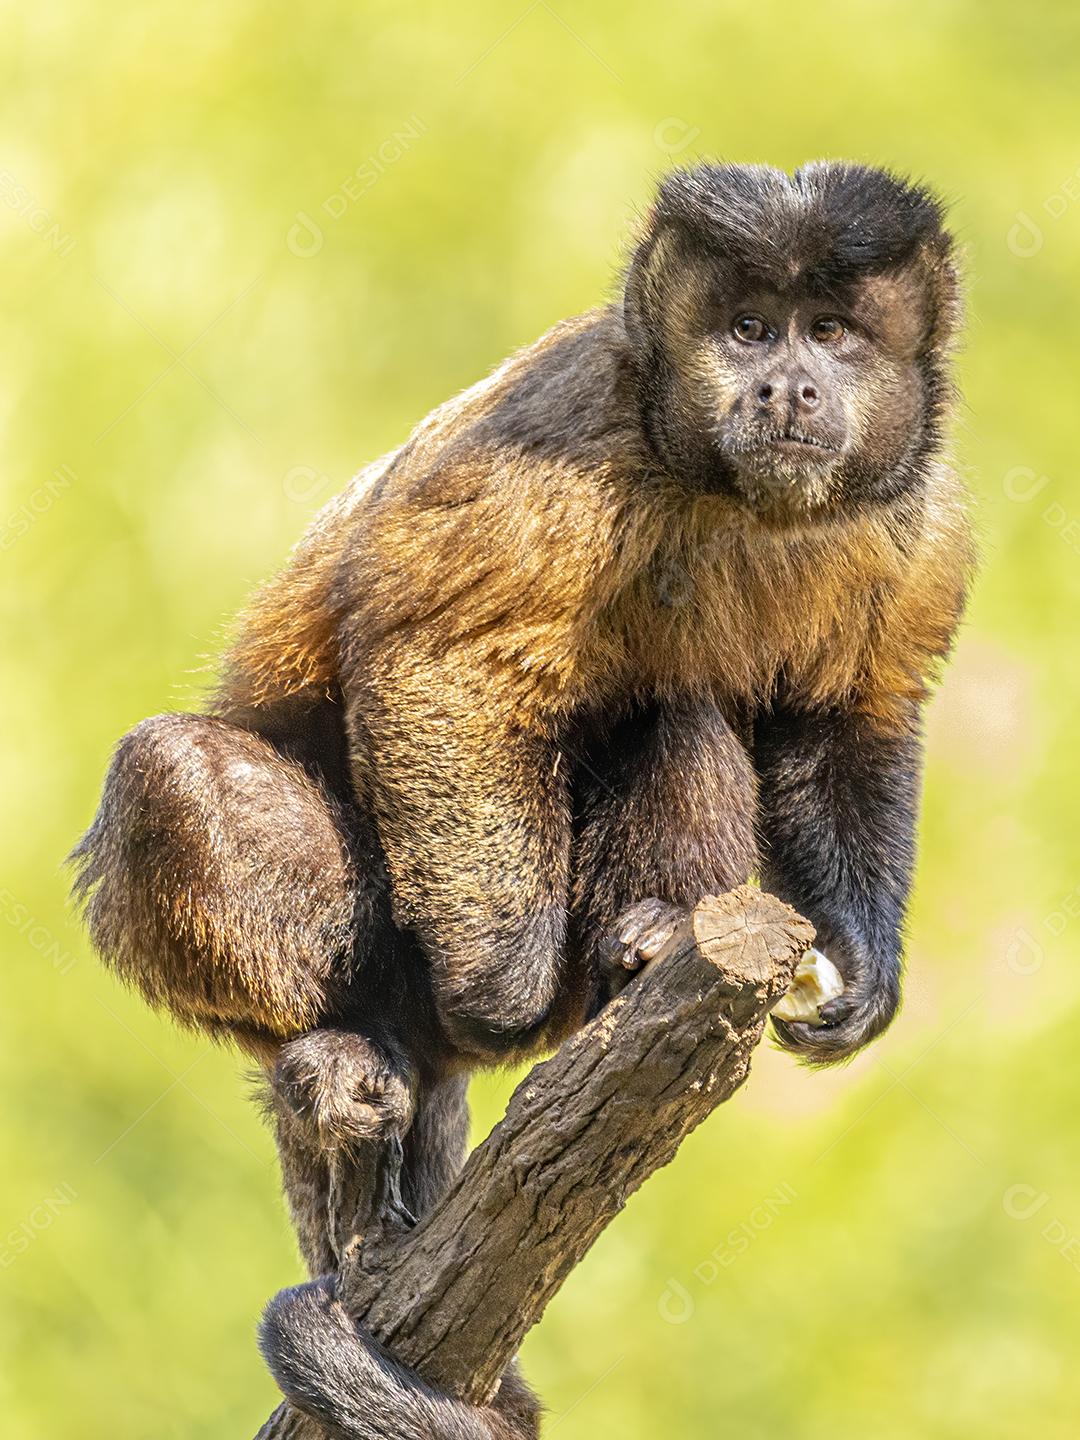 Macaco-prego tufado em cima de galho seco em floresta [download] - Designi